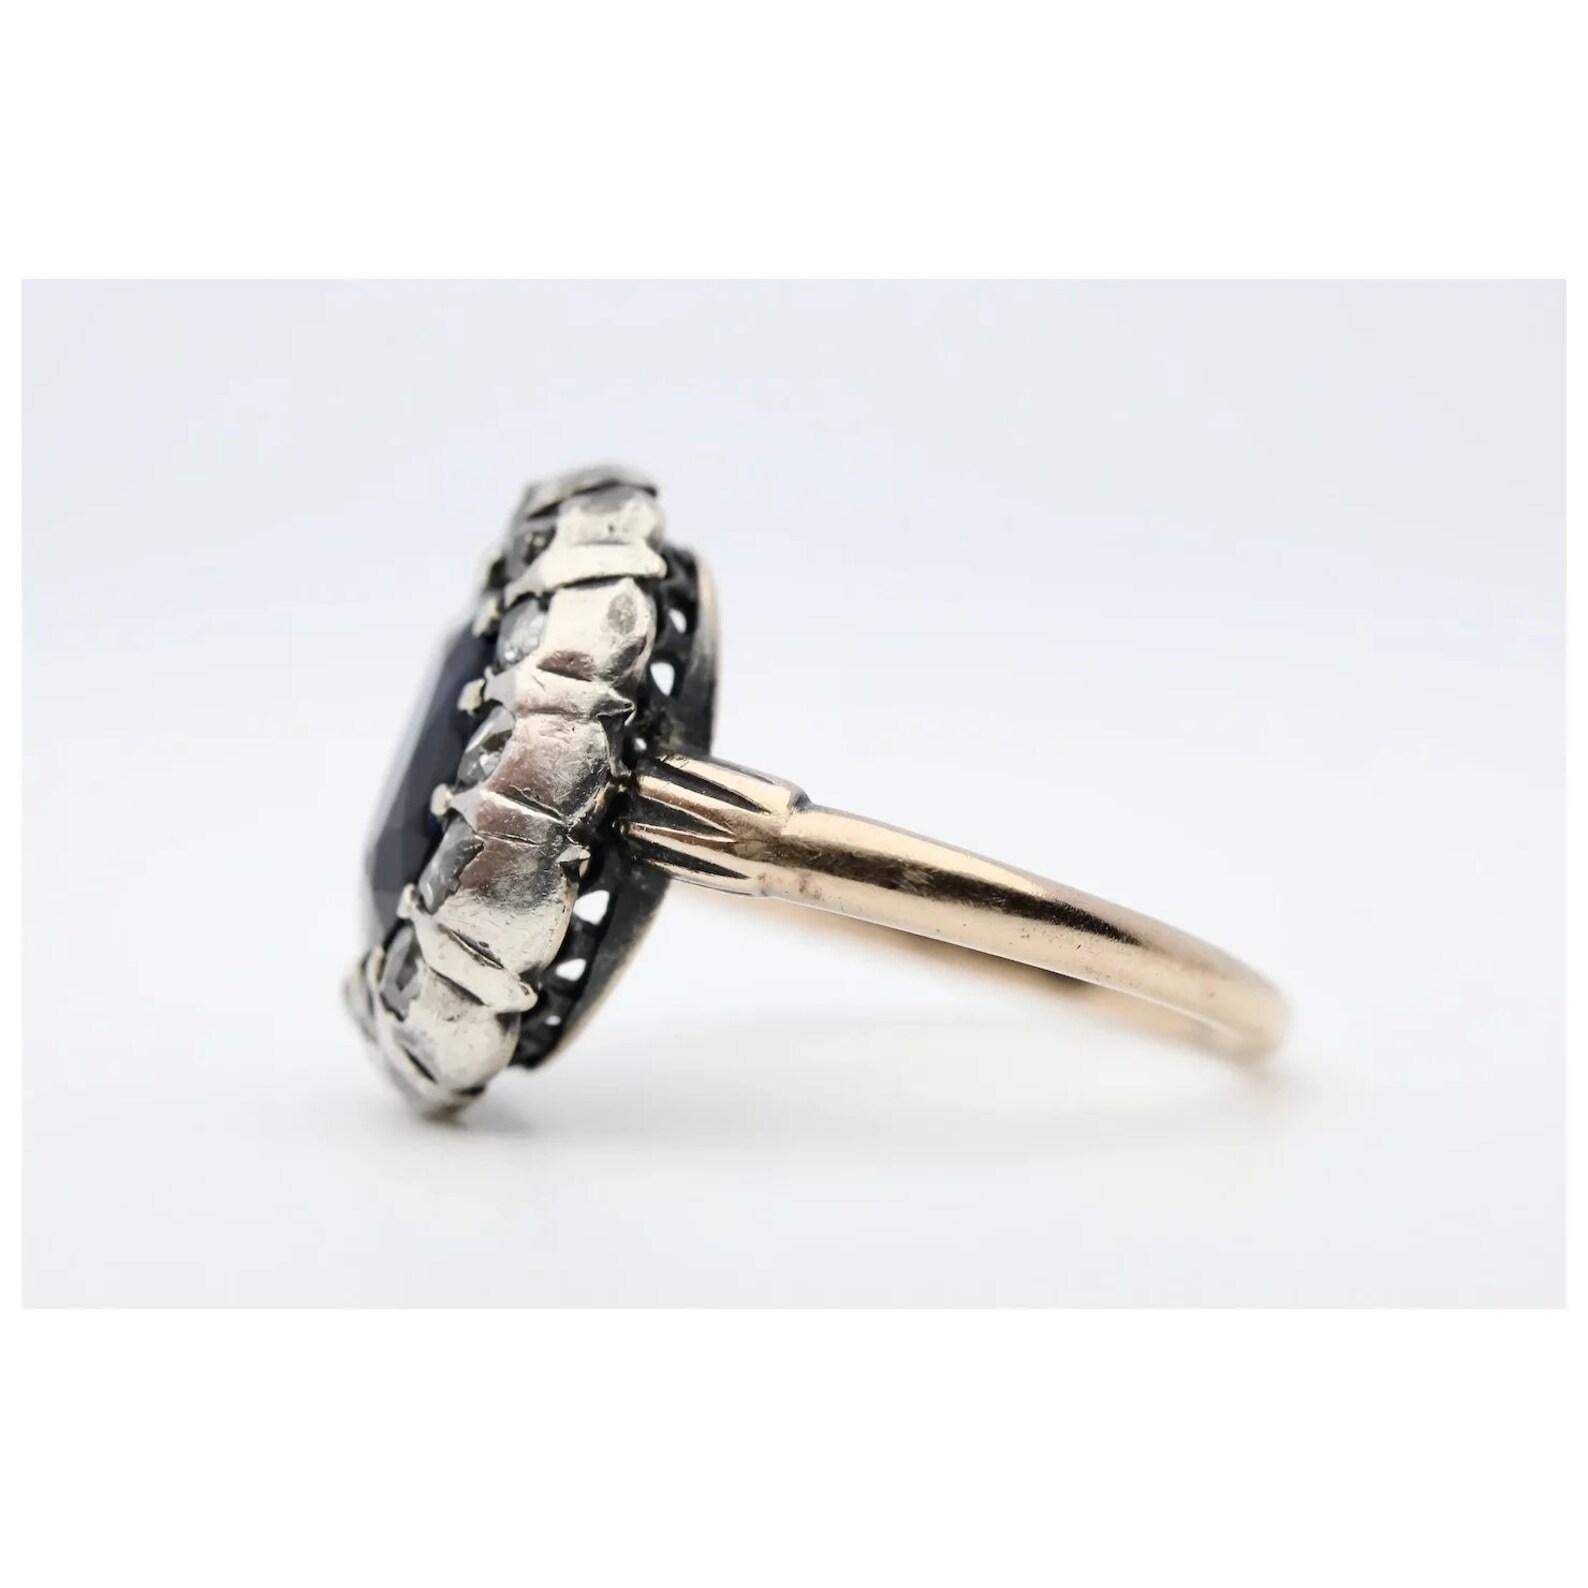 Ein originaler georgianischer Ring aus dem frühen 19. Jahrhundert mit Saphiren und Diamanten im Rosenschliff im Halo-Stil aus Silber und Roségold. Im Mittelpunkt steht ein 2,50 Karat schwerer natürlicher, lebhaft blauer Saphir von schöner